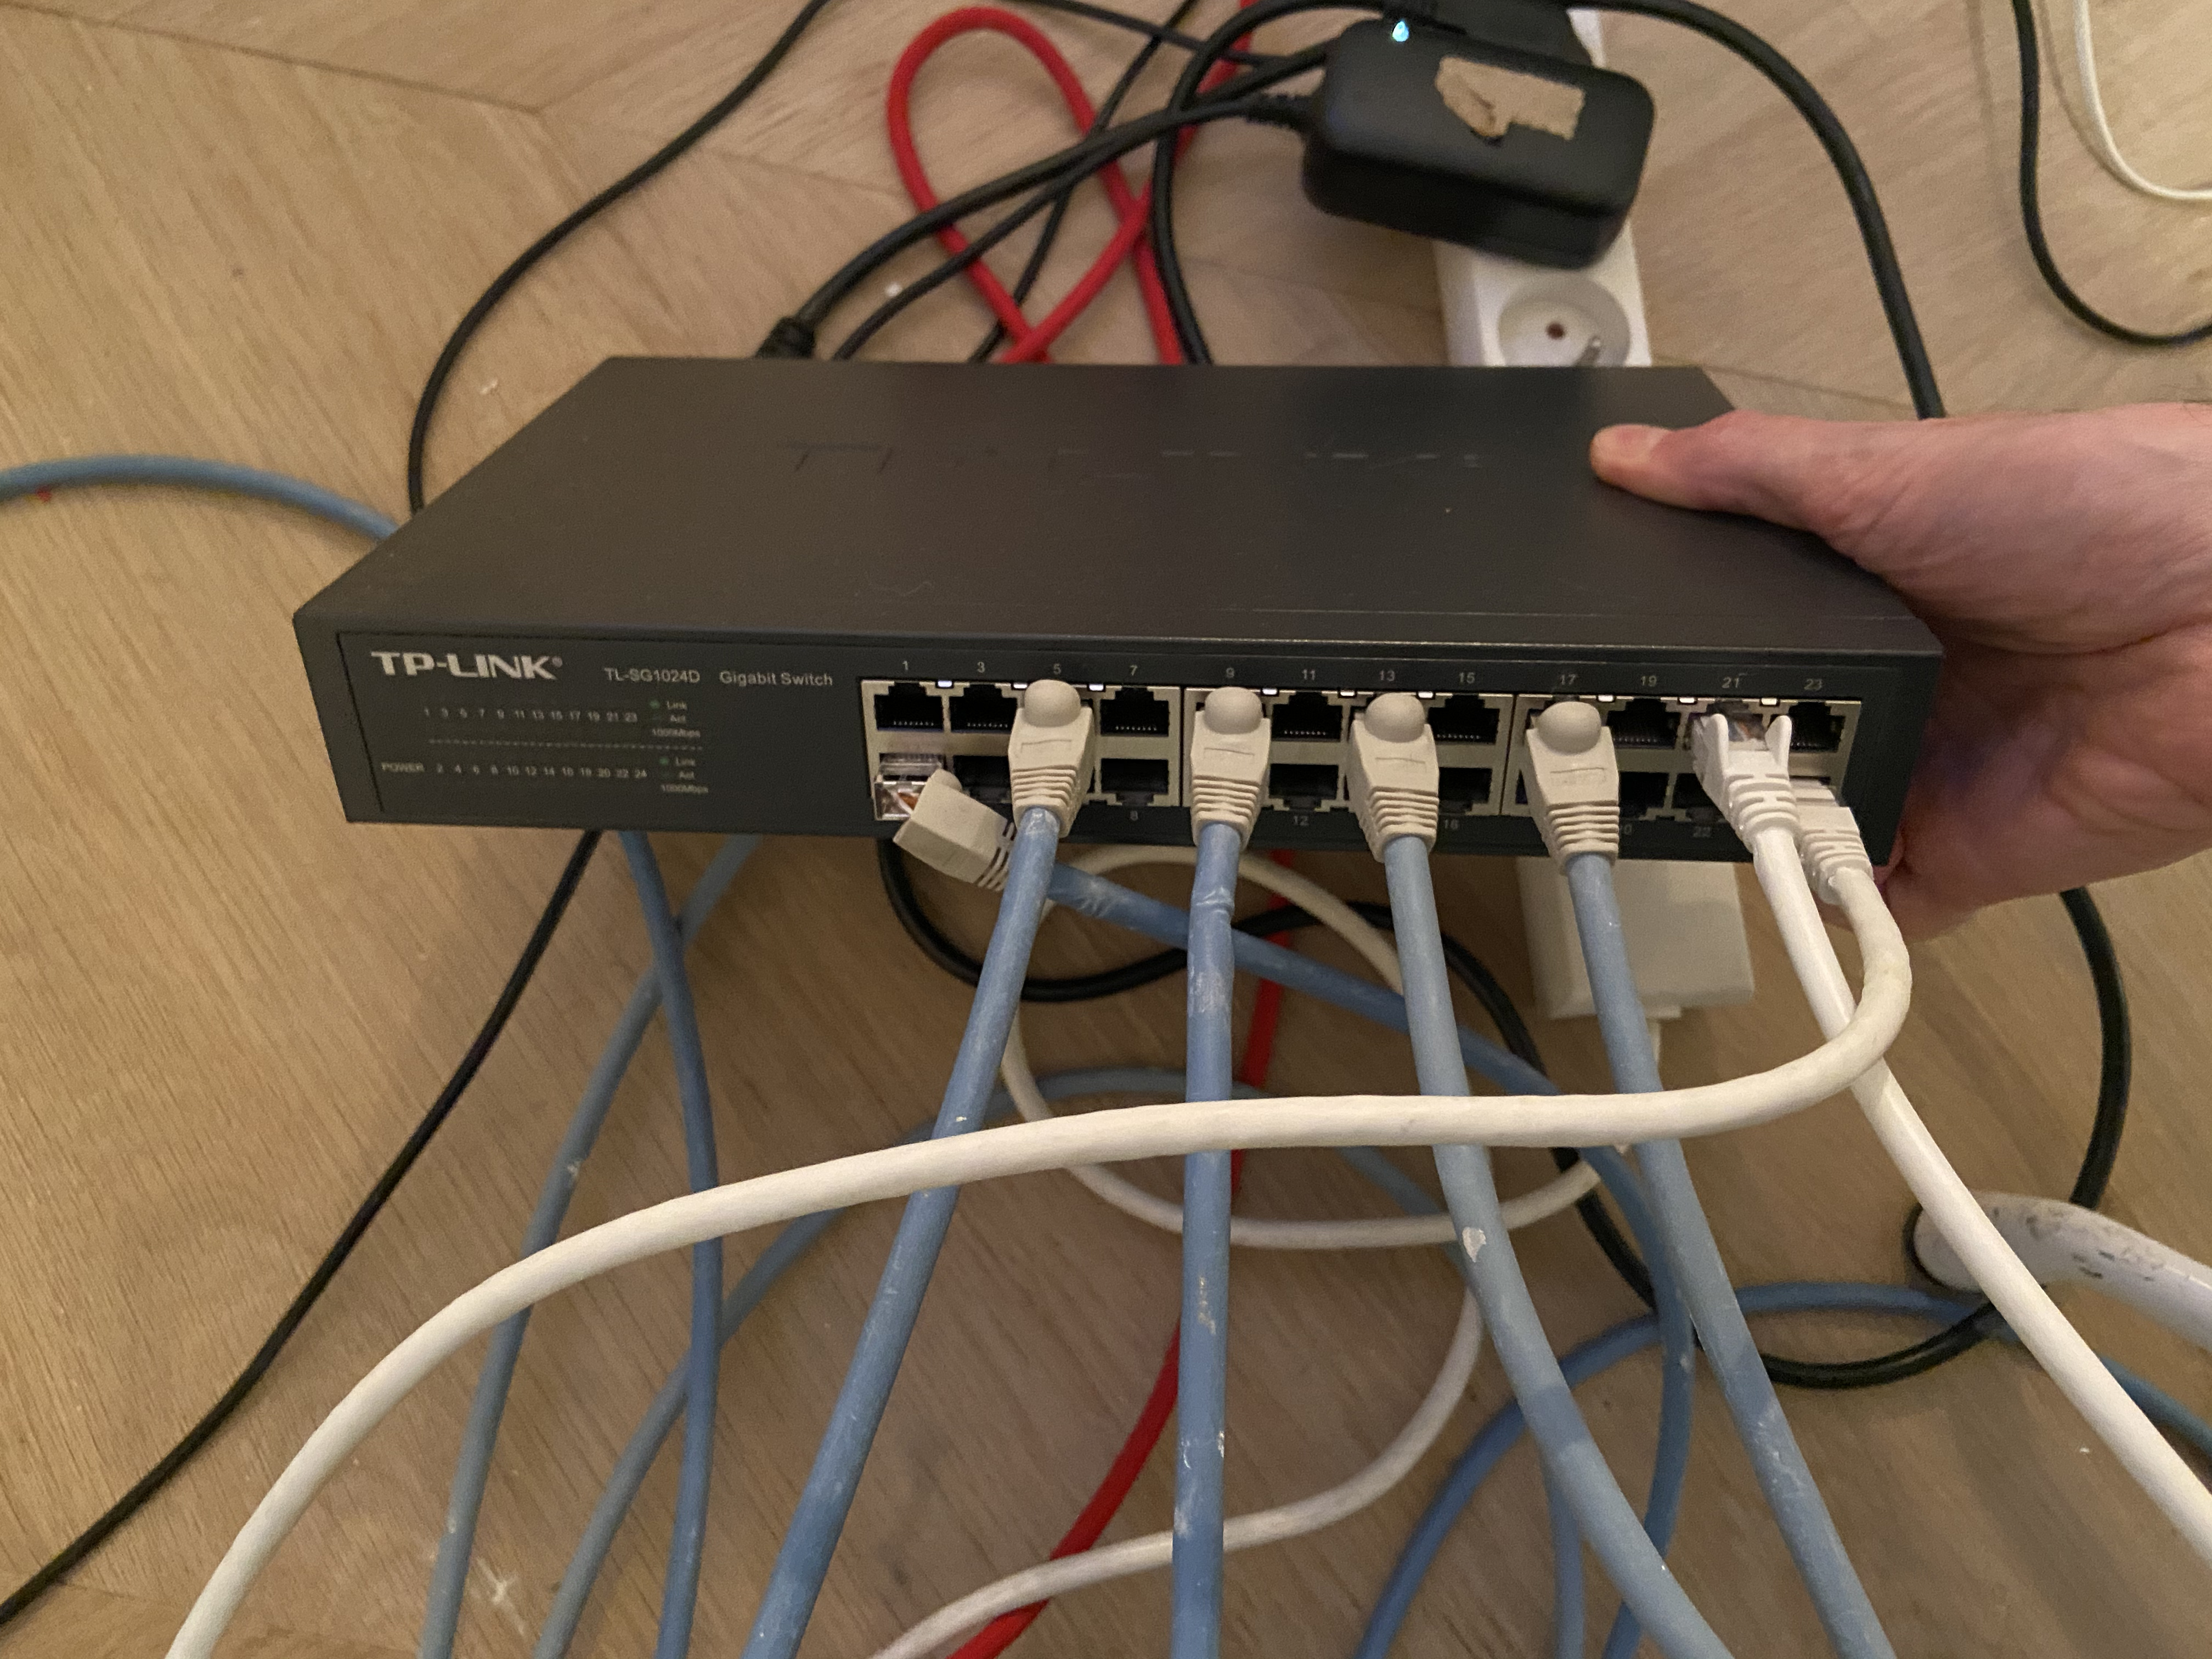 FREEBOX Pop : Relier un equipement sur le port Ethernet du